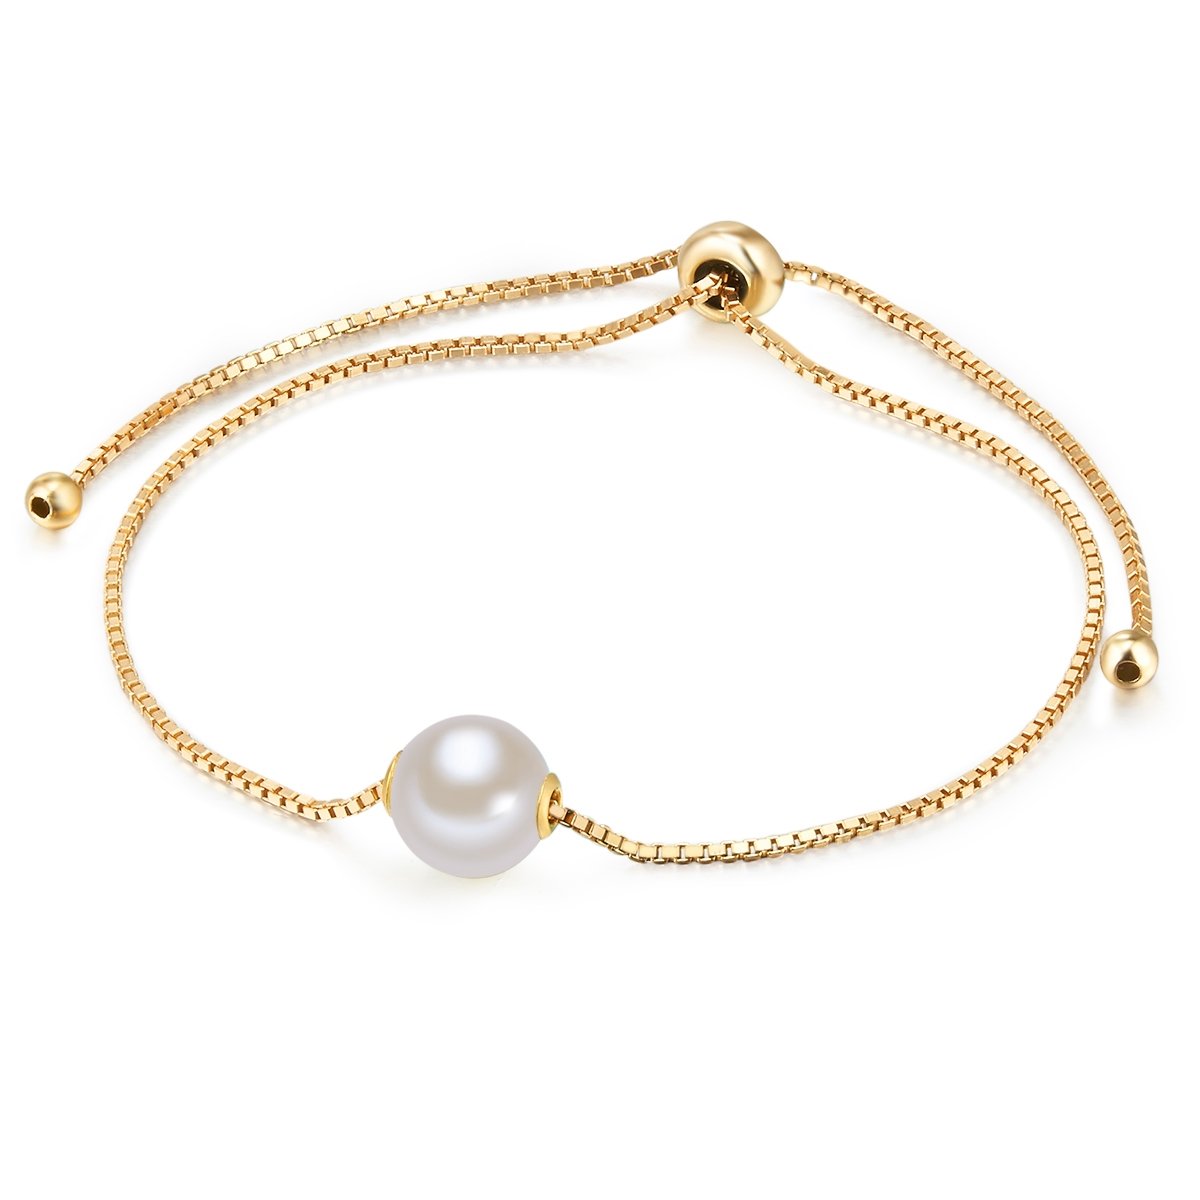 Valero Pearls Damen-Armband Sterling Silber gelbvergoldet mit Perlenanhänger mit Süßwasser-Zuchtperle weiß flexibel verstellbar 14 cm bis 22 cm - Perlen-Armband mit Perlen-Anhänger groß